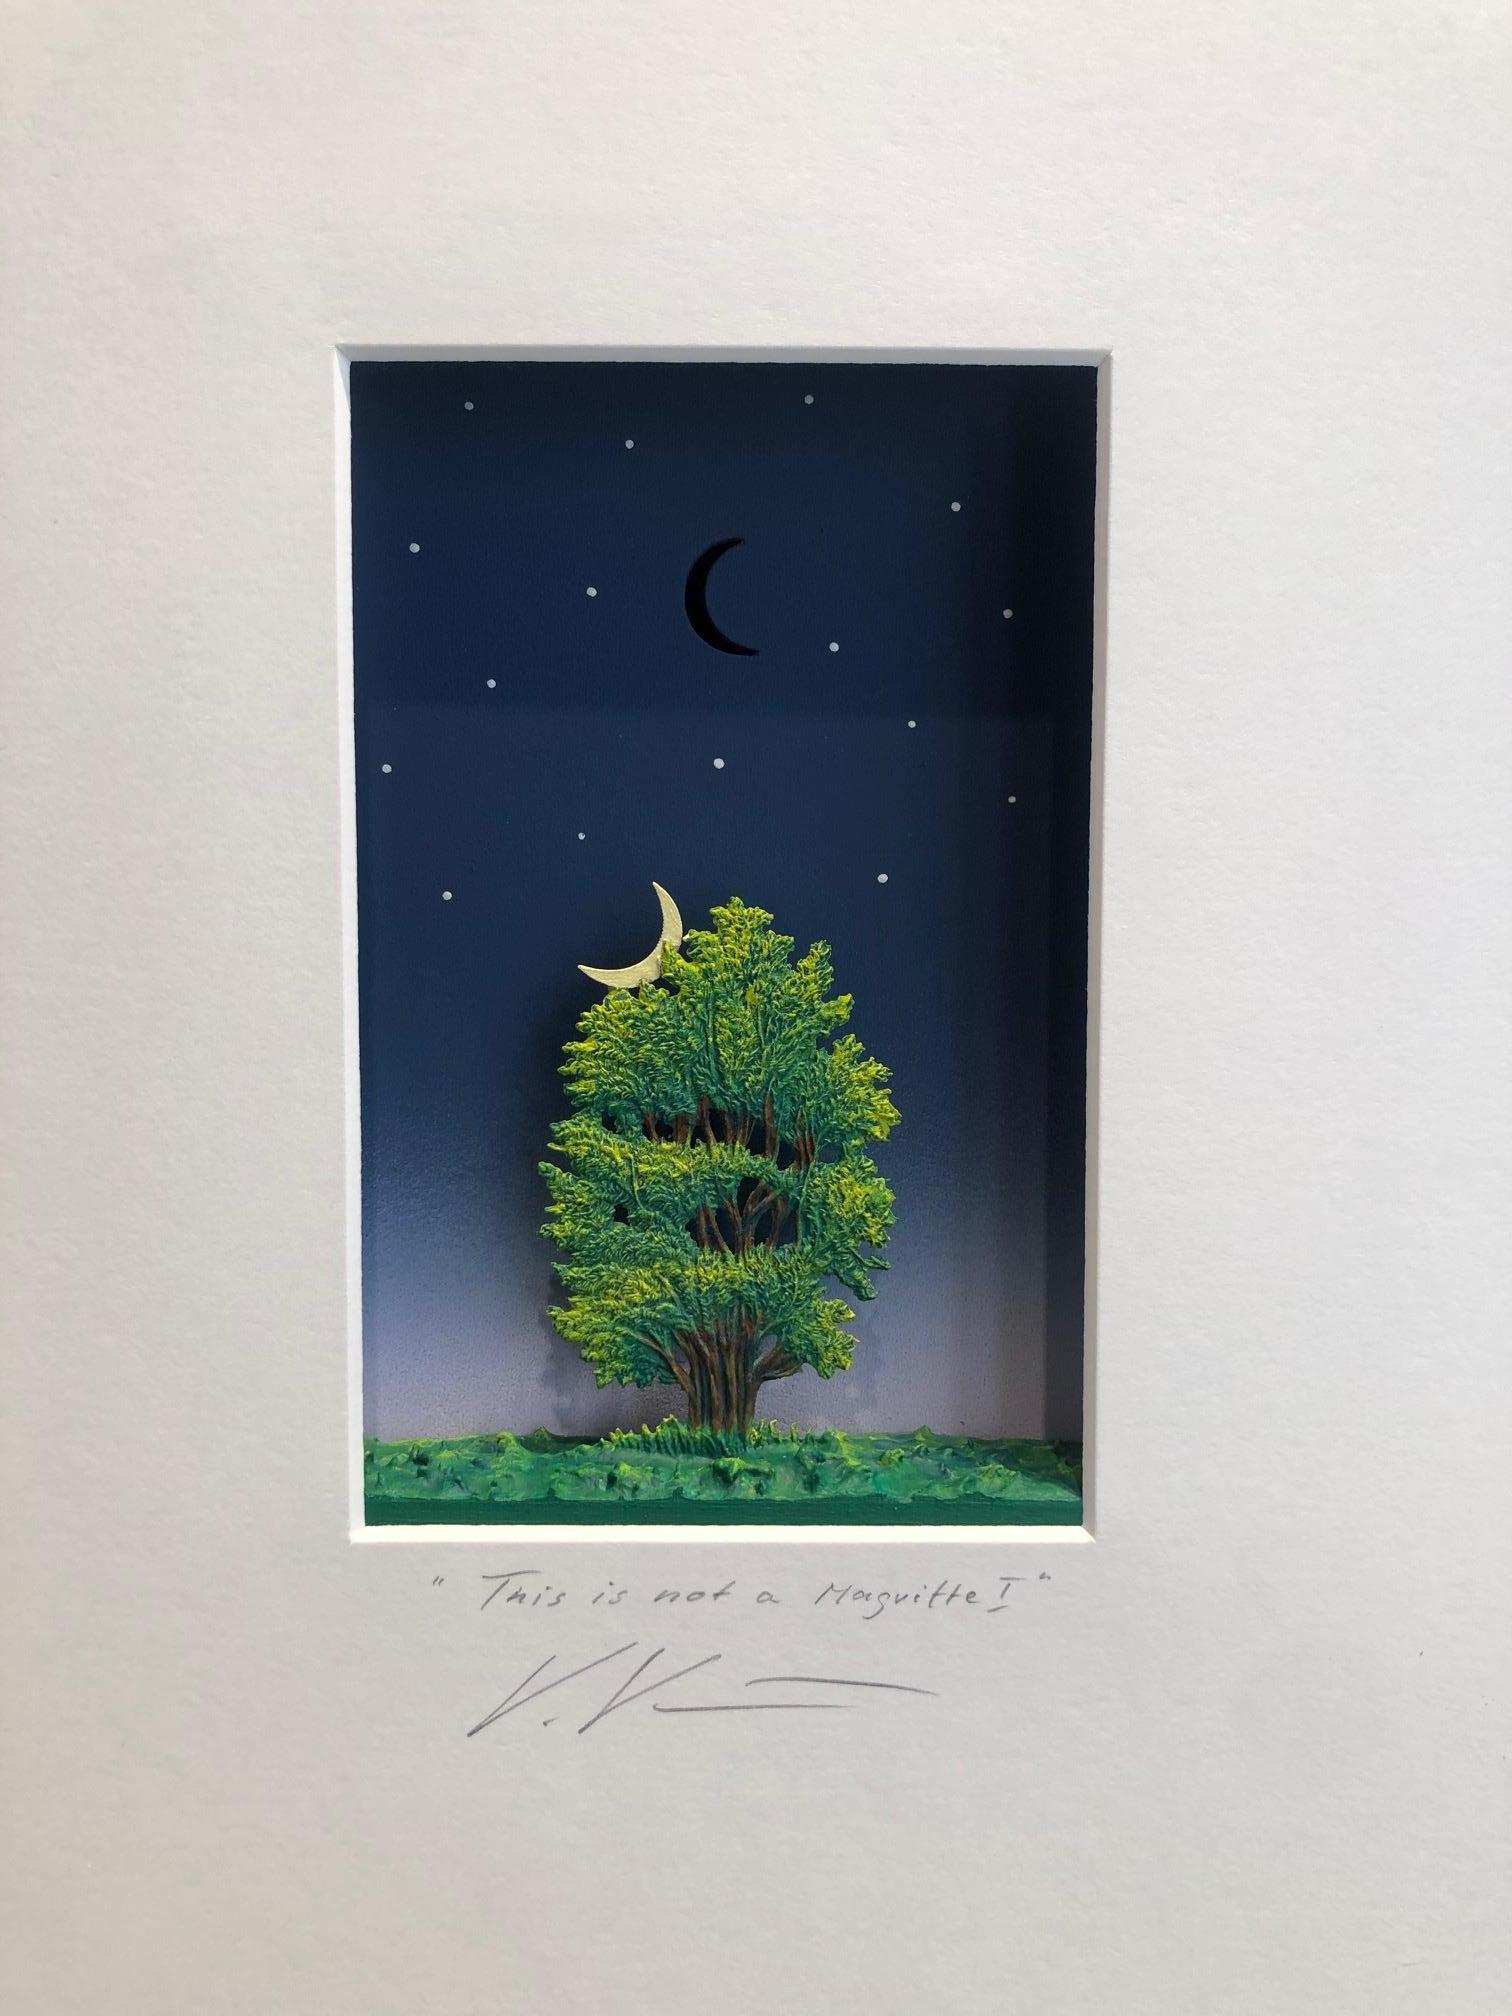 Dies ist kein Magritte I - zeitgenössisches Kunstwerk, Hommage an Magritte Malerei – Mixed Media Art von Volker Kuhn